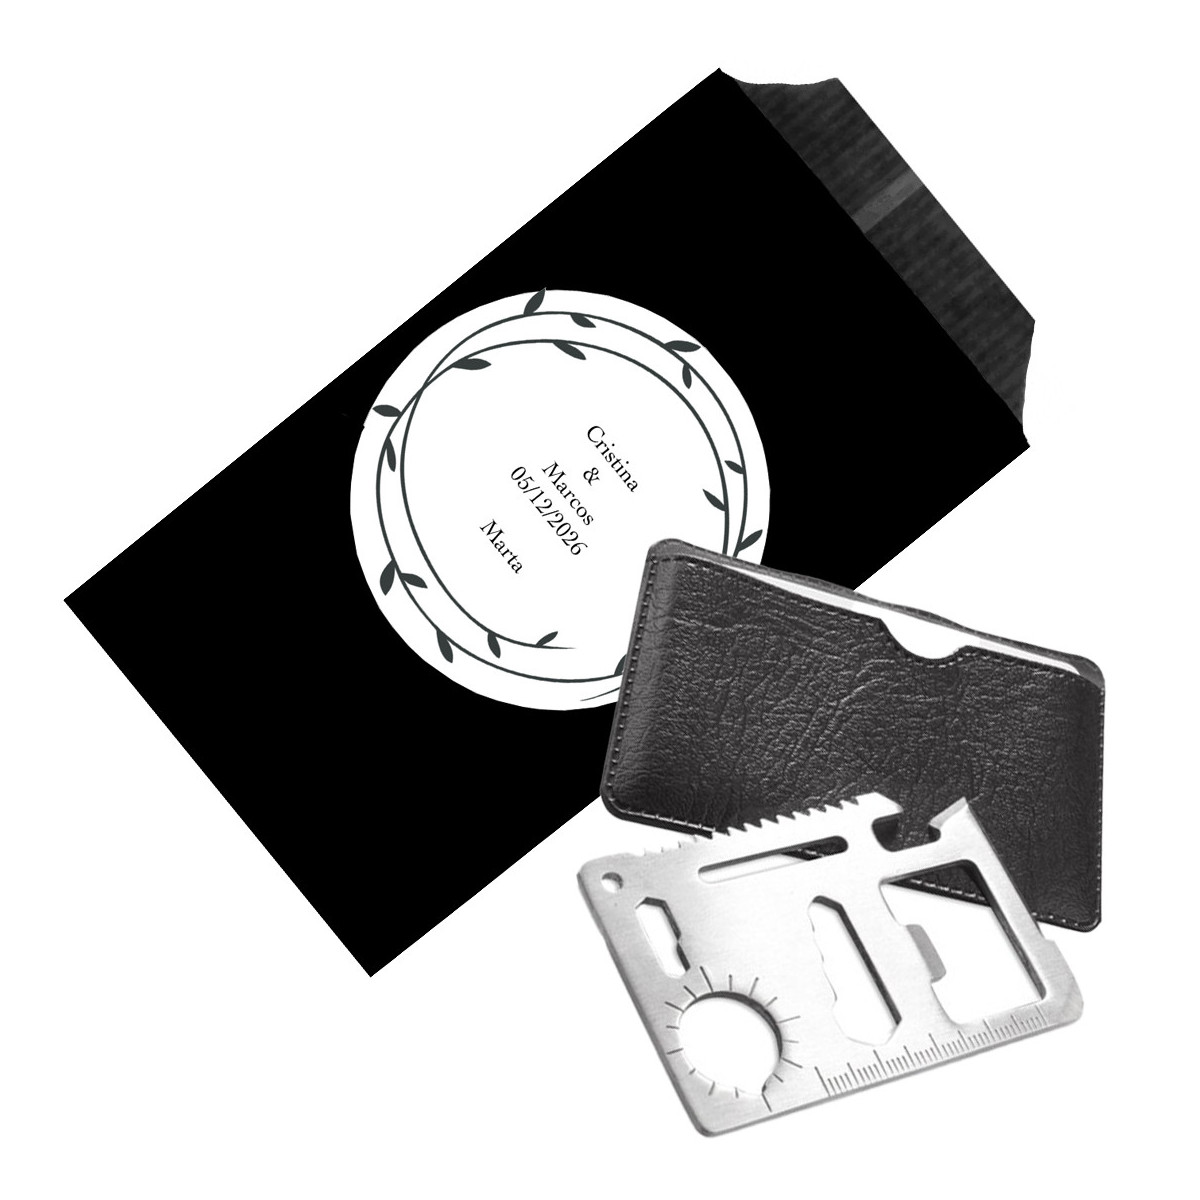 Multiferramenta de bolso com bainha preta personalizada